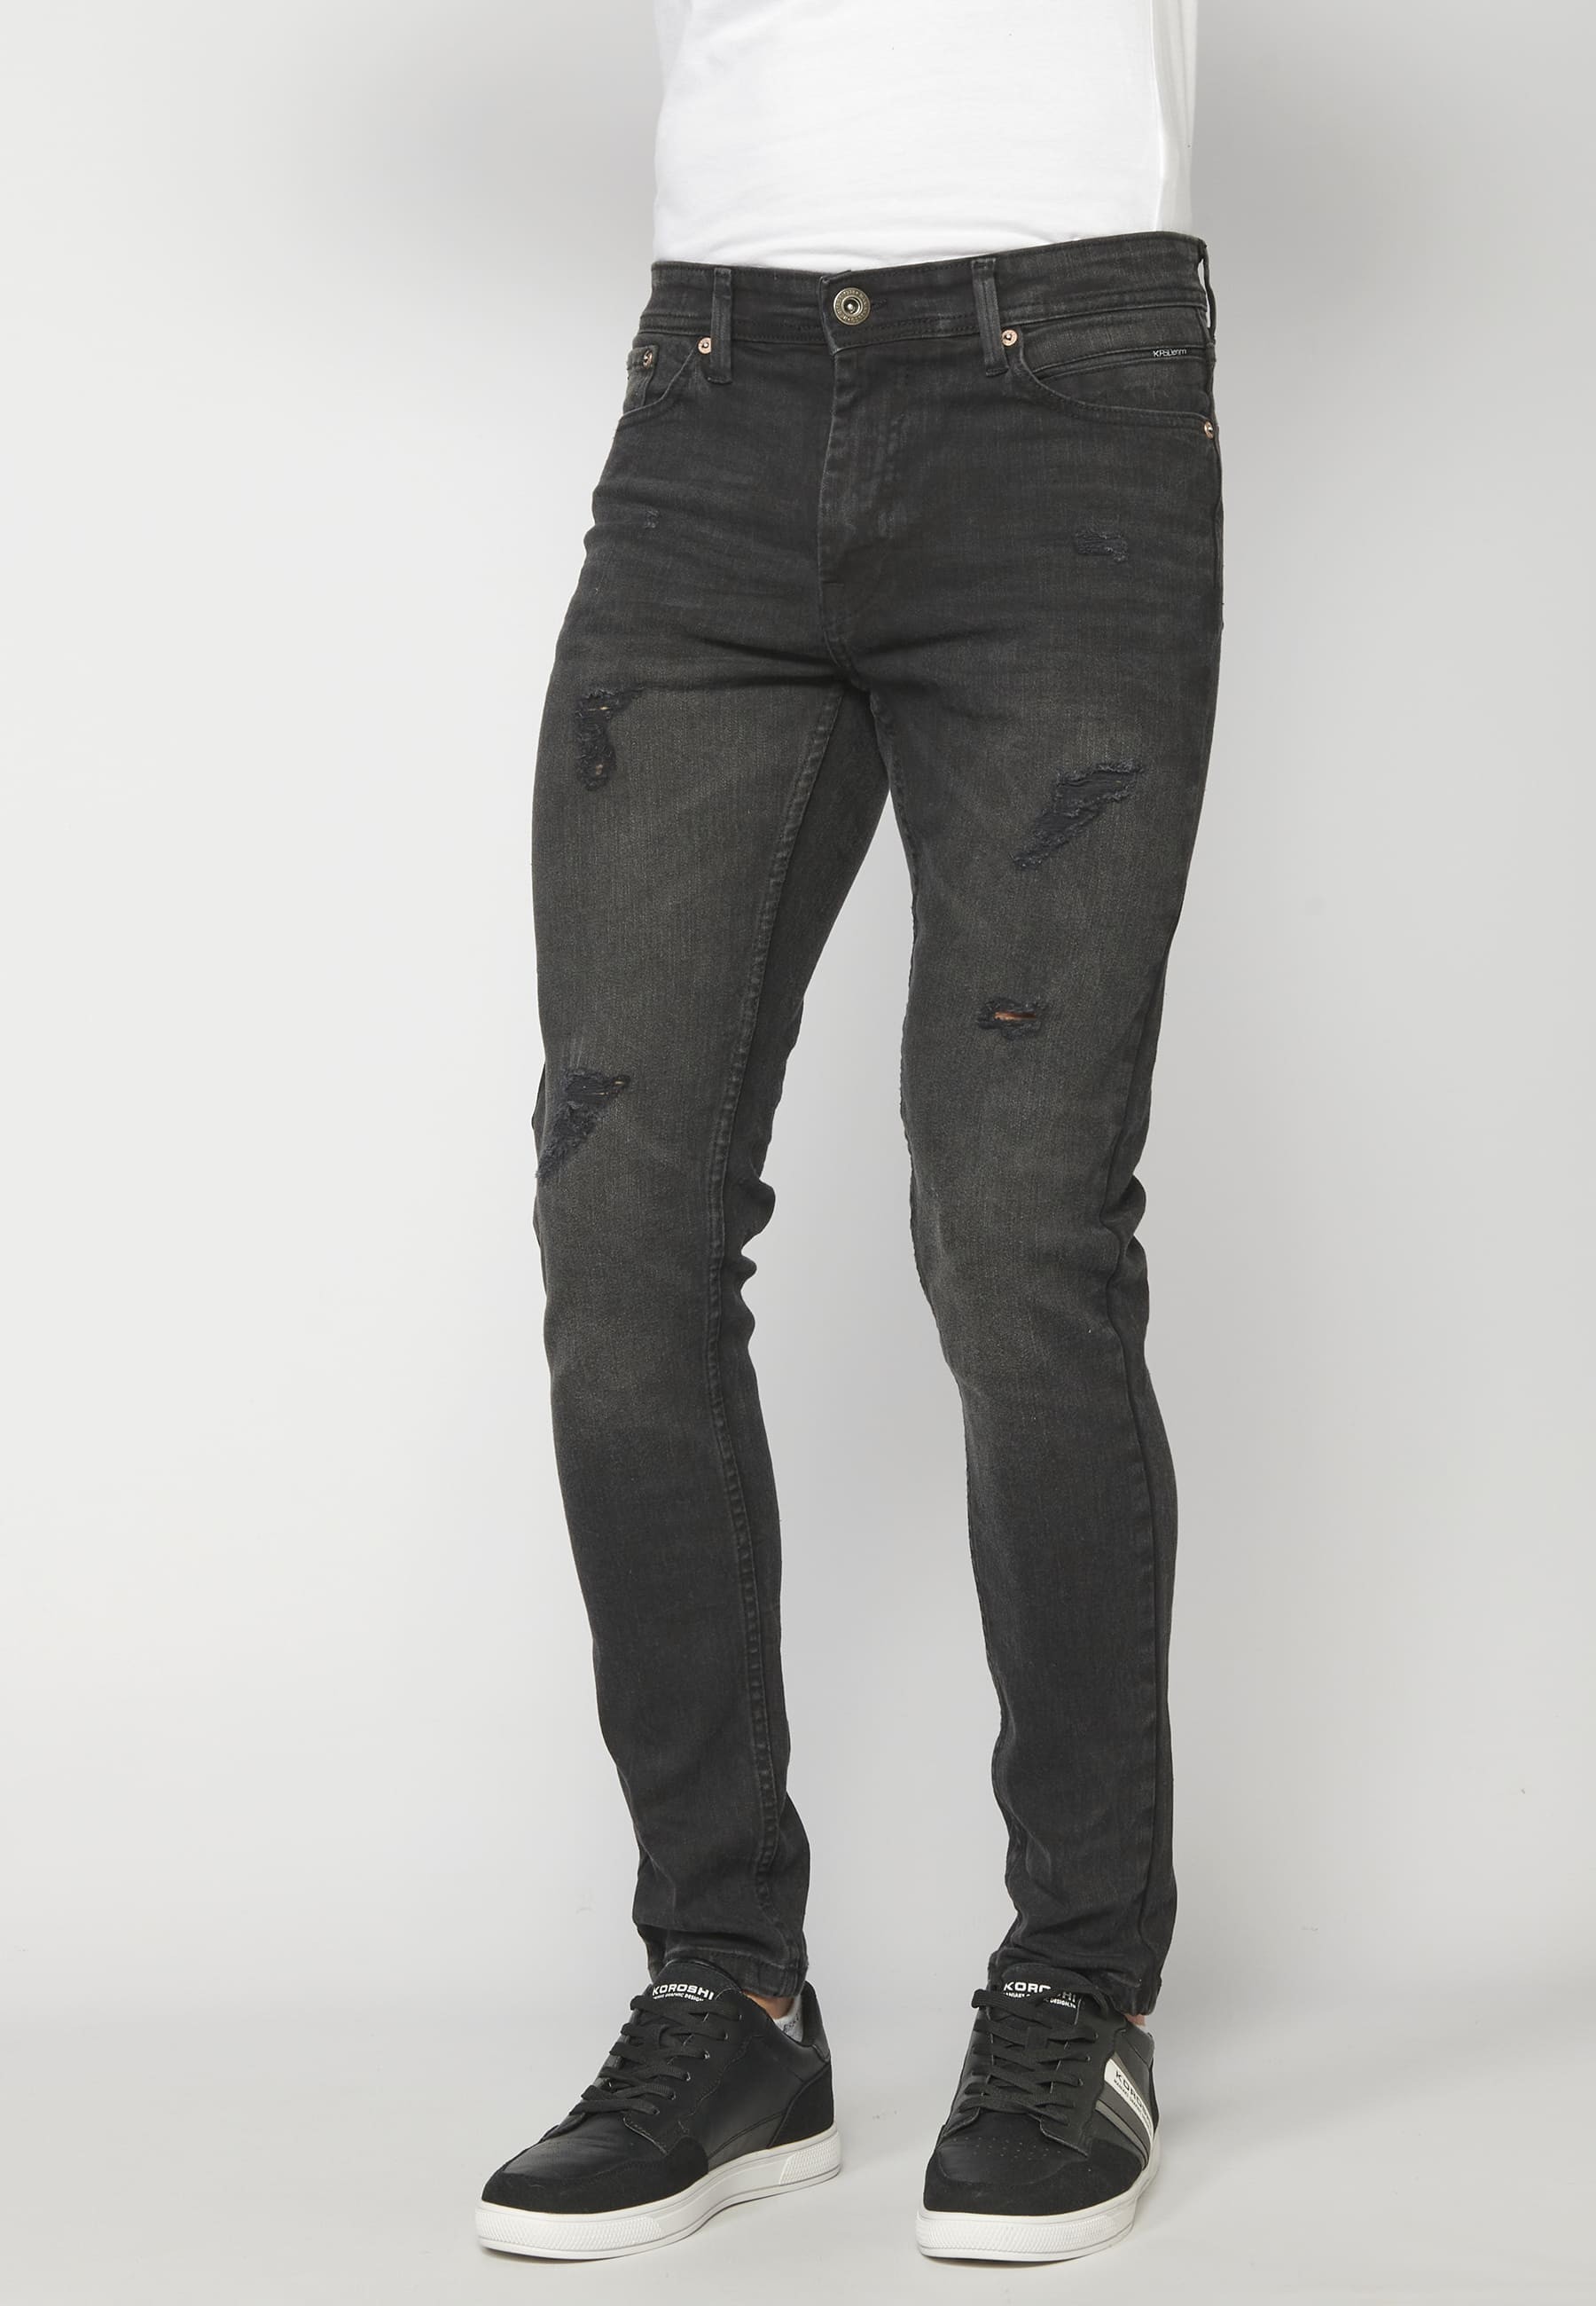 Pantalons jean denim super skinny color Negre per a Home